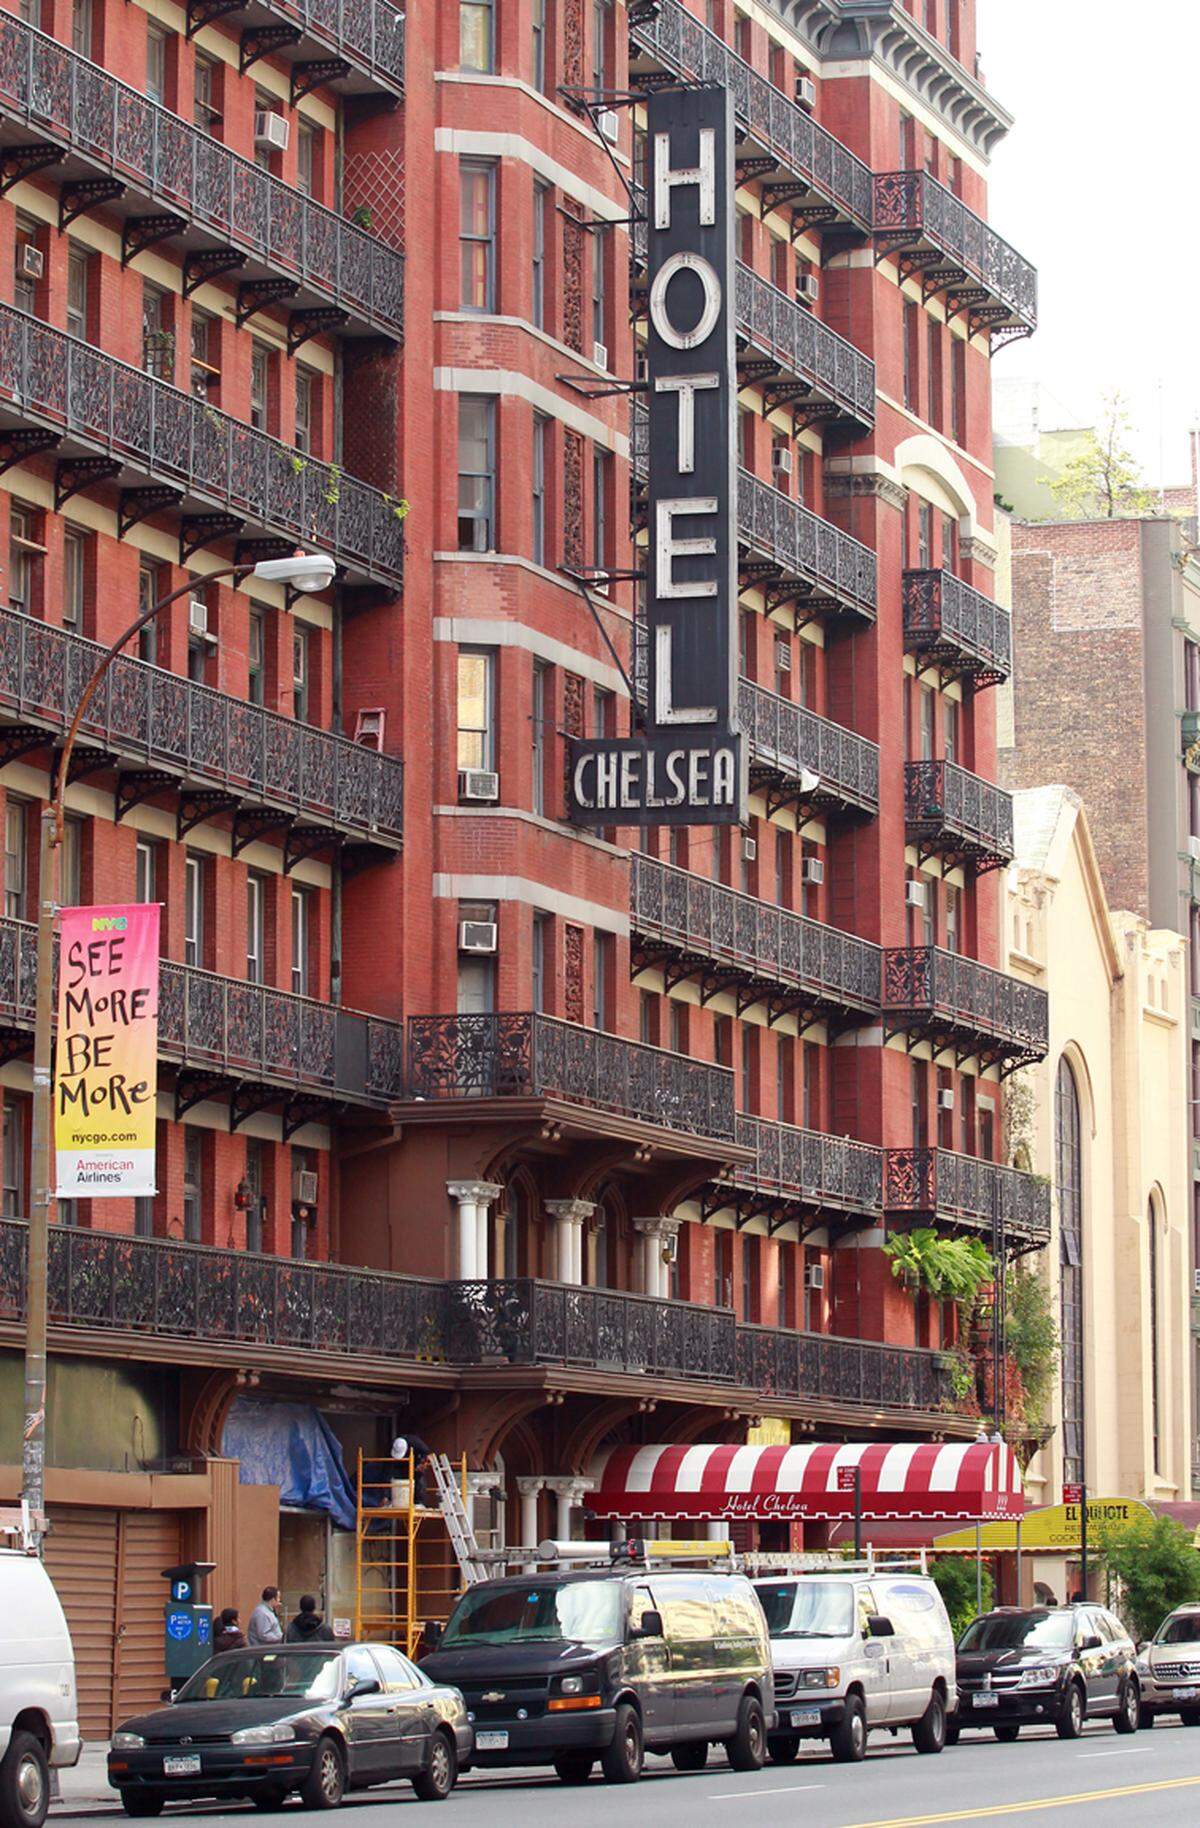 Heruntergekommen wirkt das Chelsea-Hotel in New York nicht nur von außen. Auch innen soll so mancher Künstler mehr getrunken haben, als ihm gut tat. "Die Dolmetscherin" mit Nicole Kidman in der Hauptrolle spielte in dem Backsteinhaus.